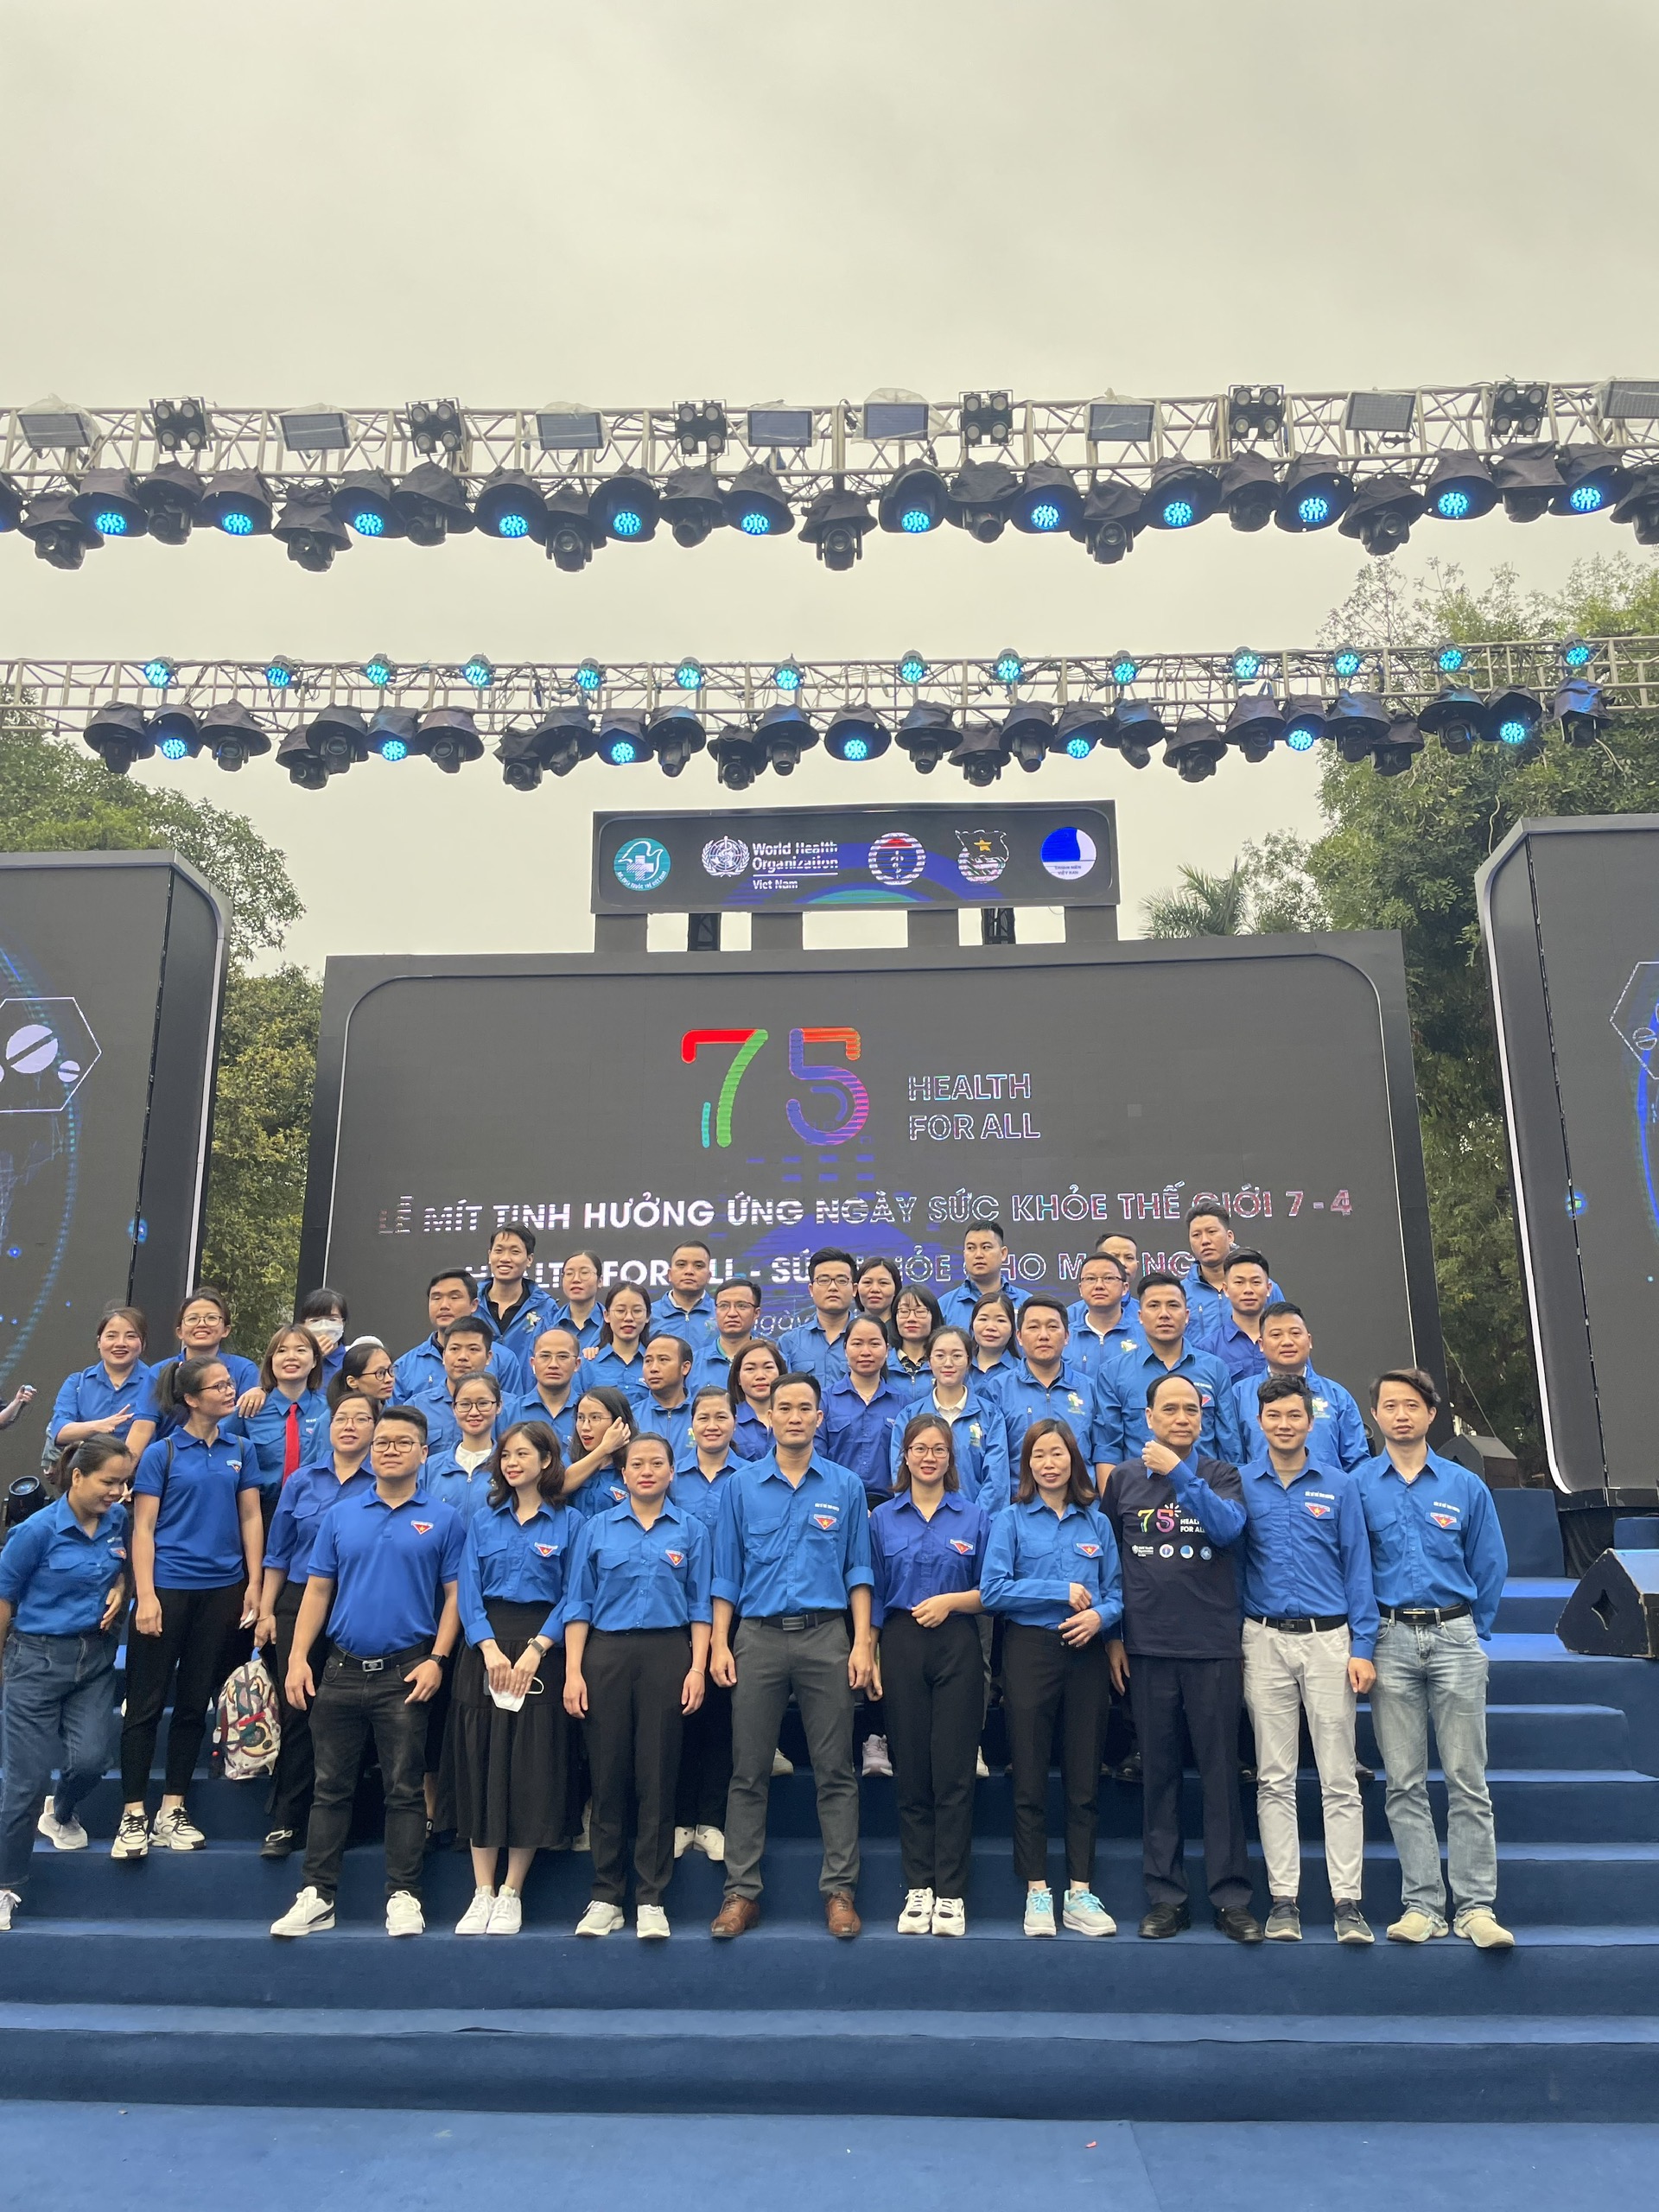 Thành lập mạng lưới Thầy thuốc trẻ 585 trực thuộc Trung ương Hội thầy thuốc trẻ Việt Nam